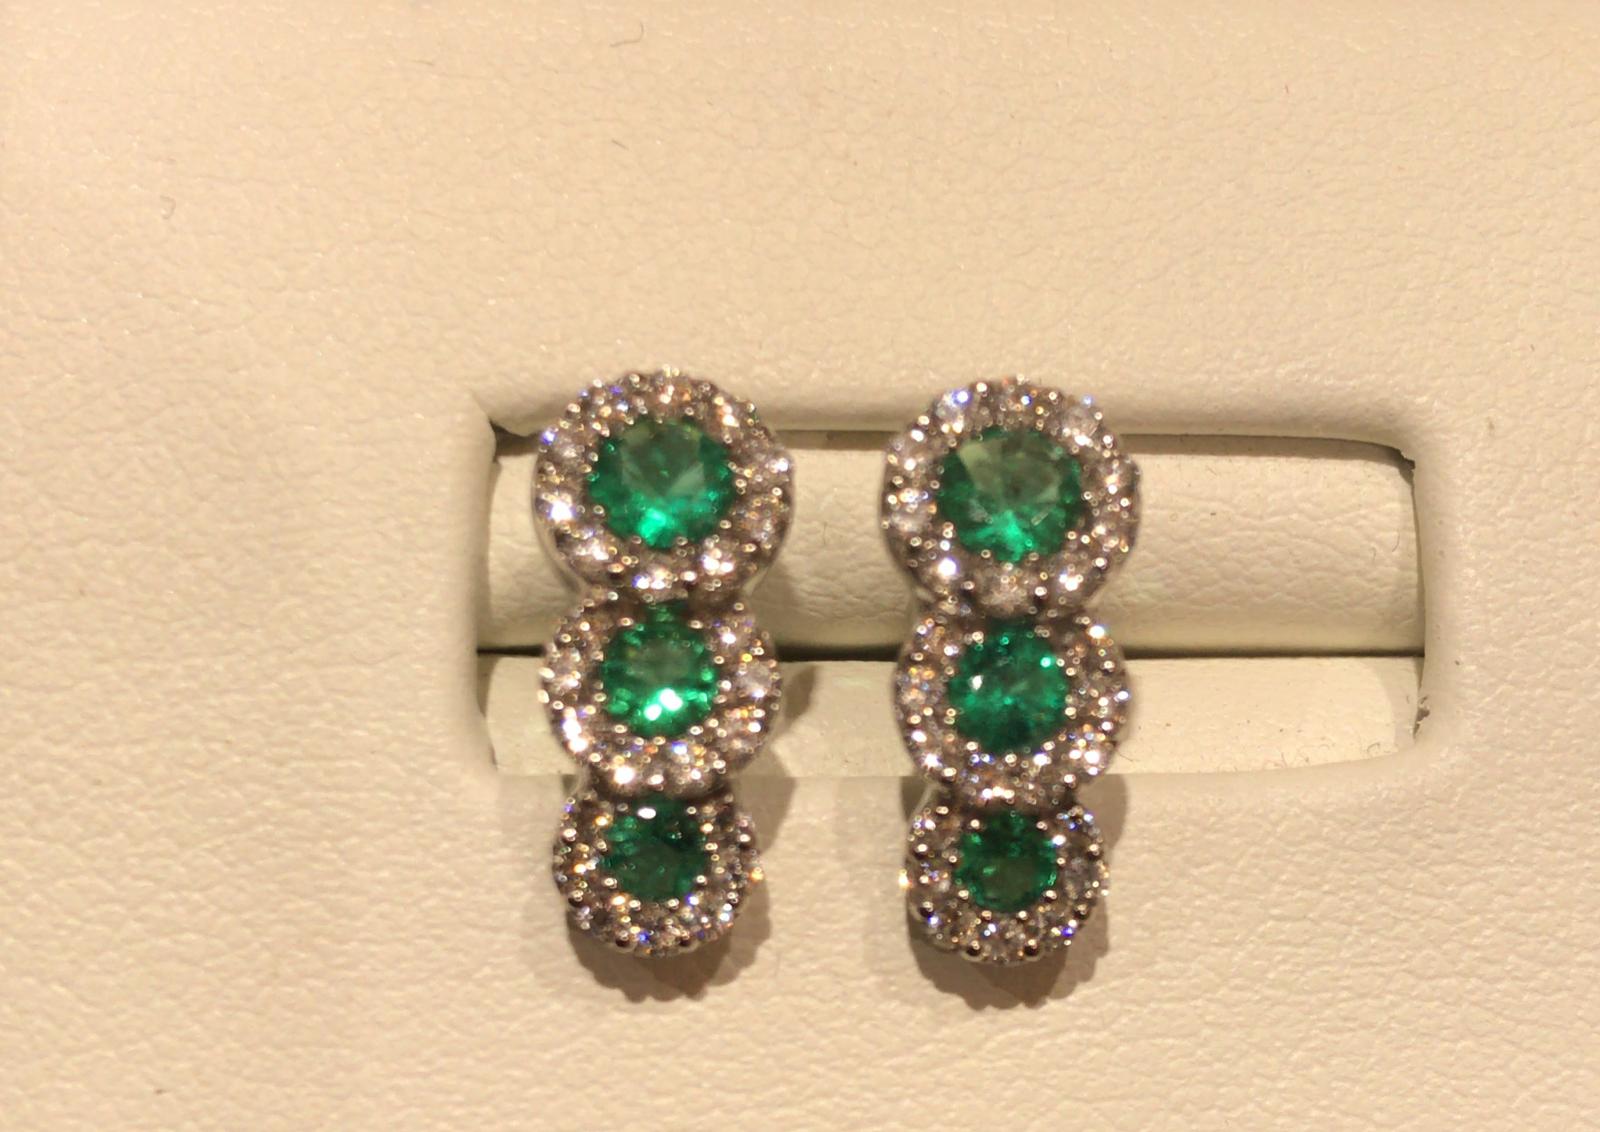 Emerald earrings in 750% white gold